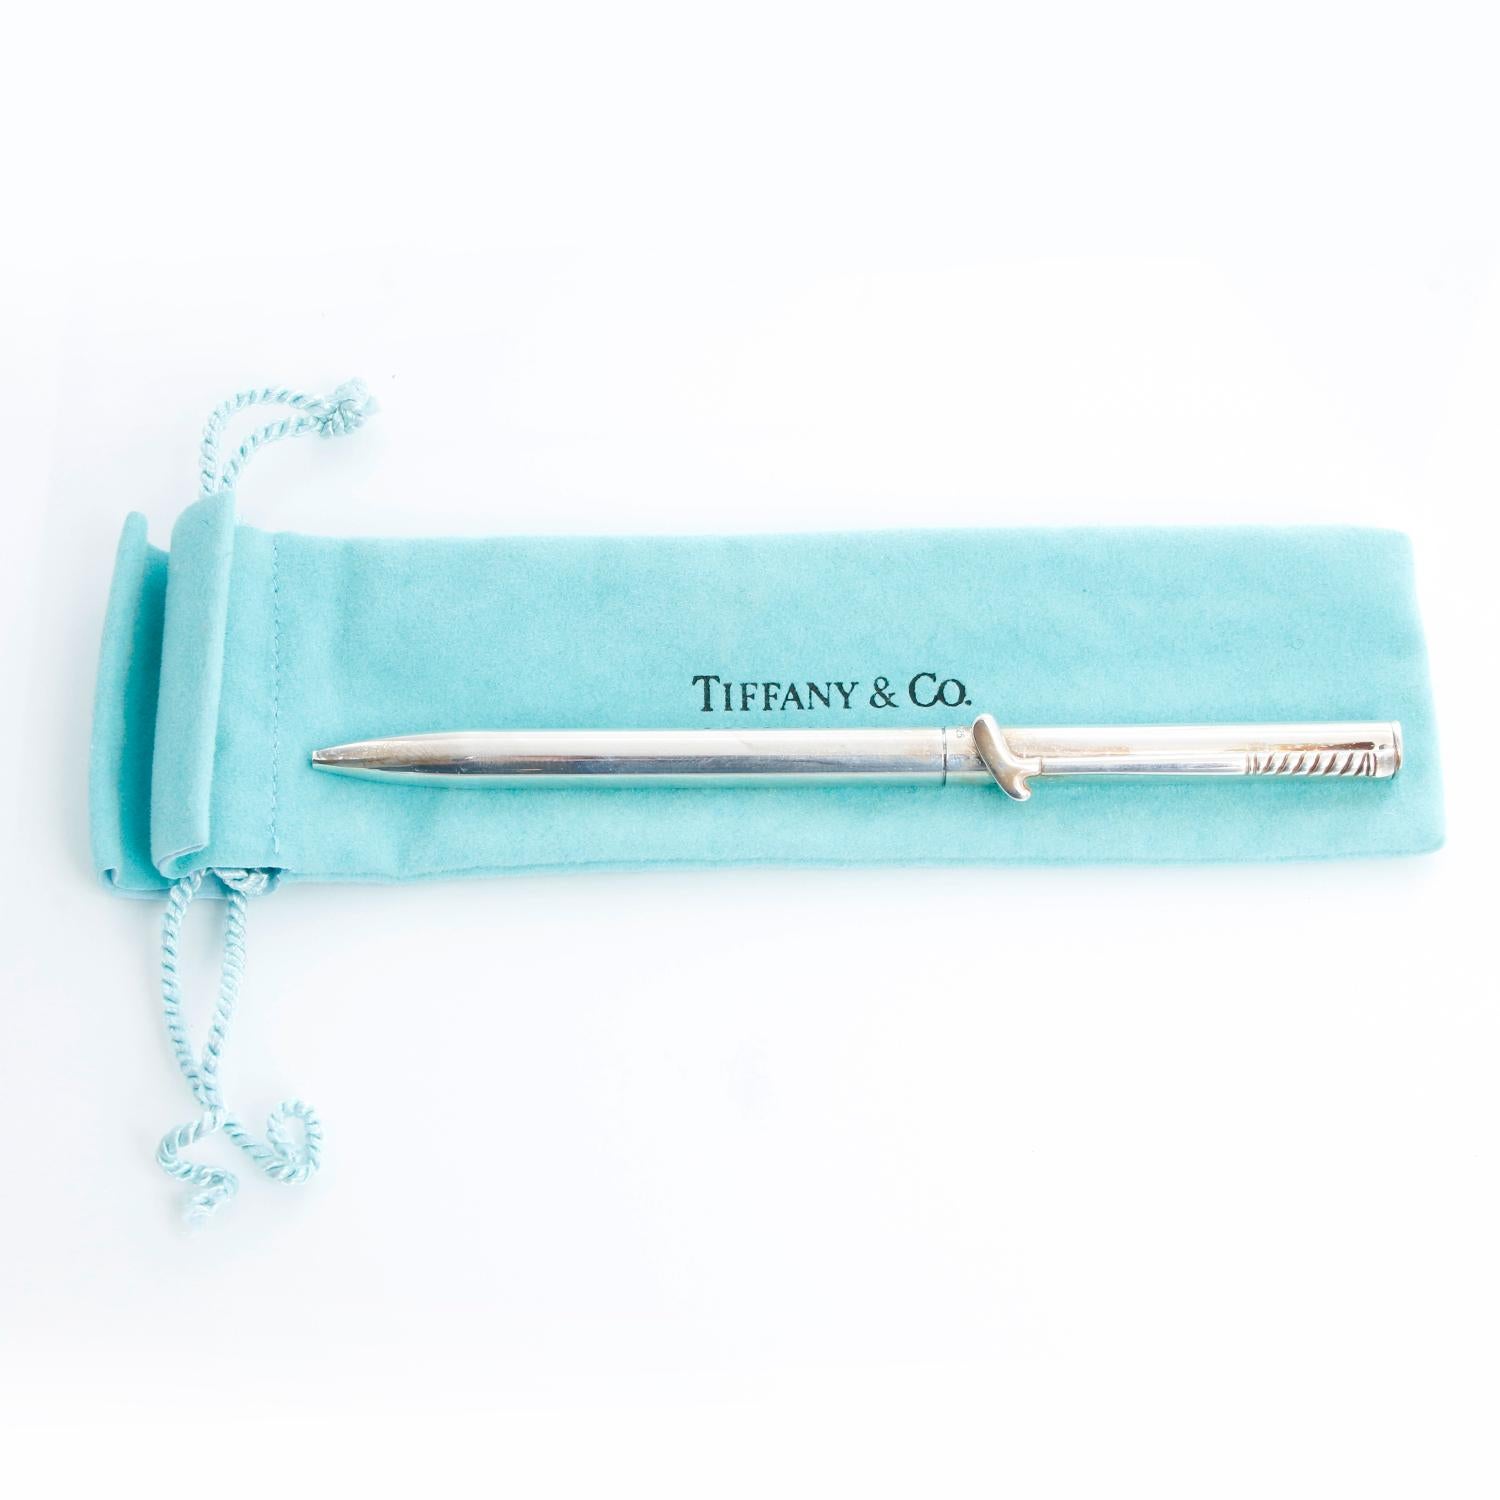 Tiffany & Co. Golf Club Kugelschreiber  - Kugelschreiber aus Sterlingsilber von Tiffany & Co. mit Golfschläger-Taschenclip und Dreh-Druckknopf. Inklusive Staubbeutel.